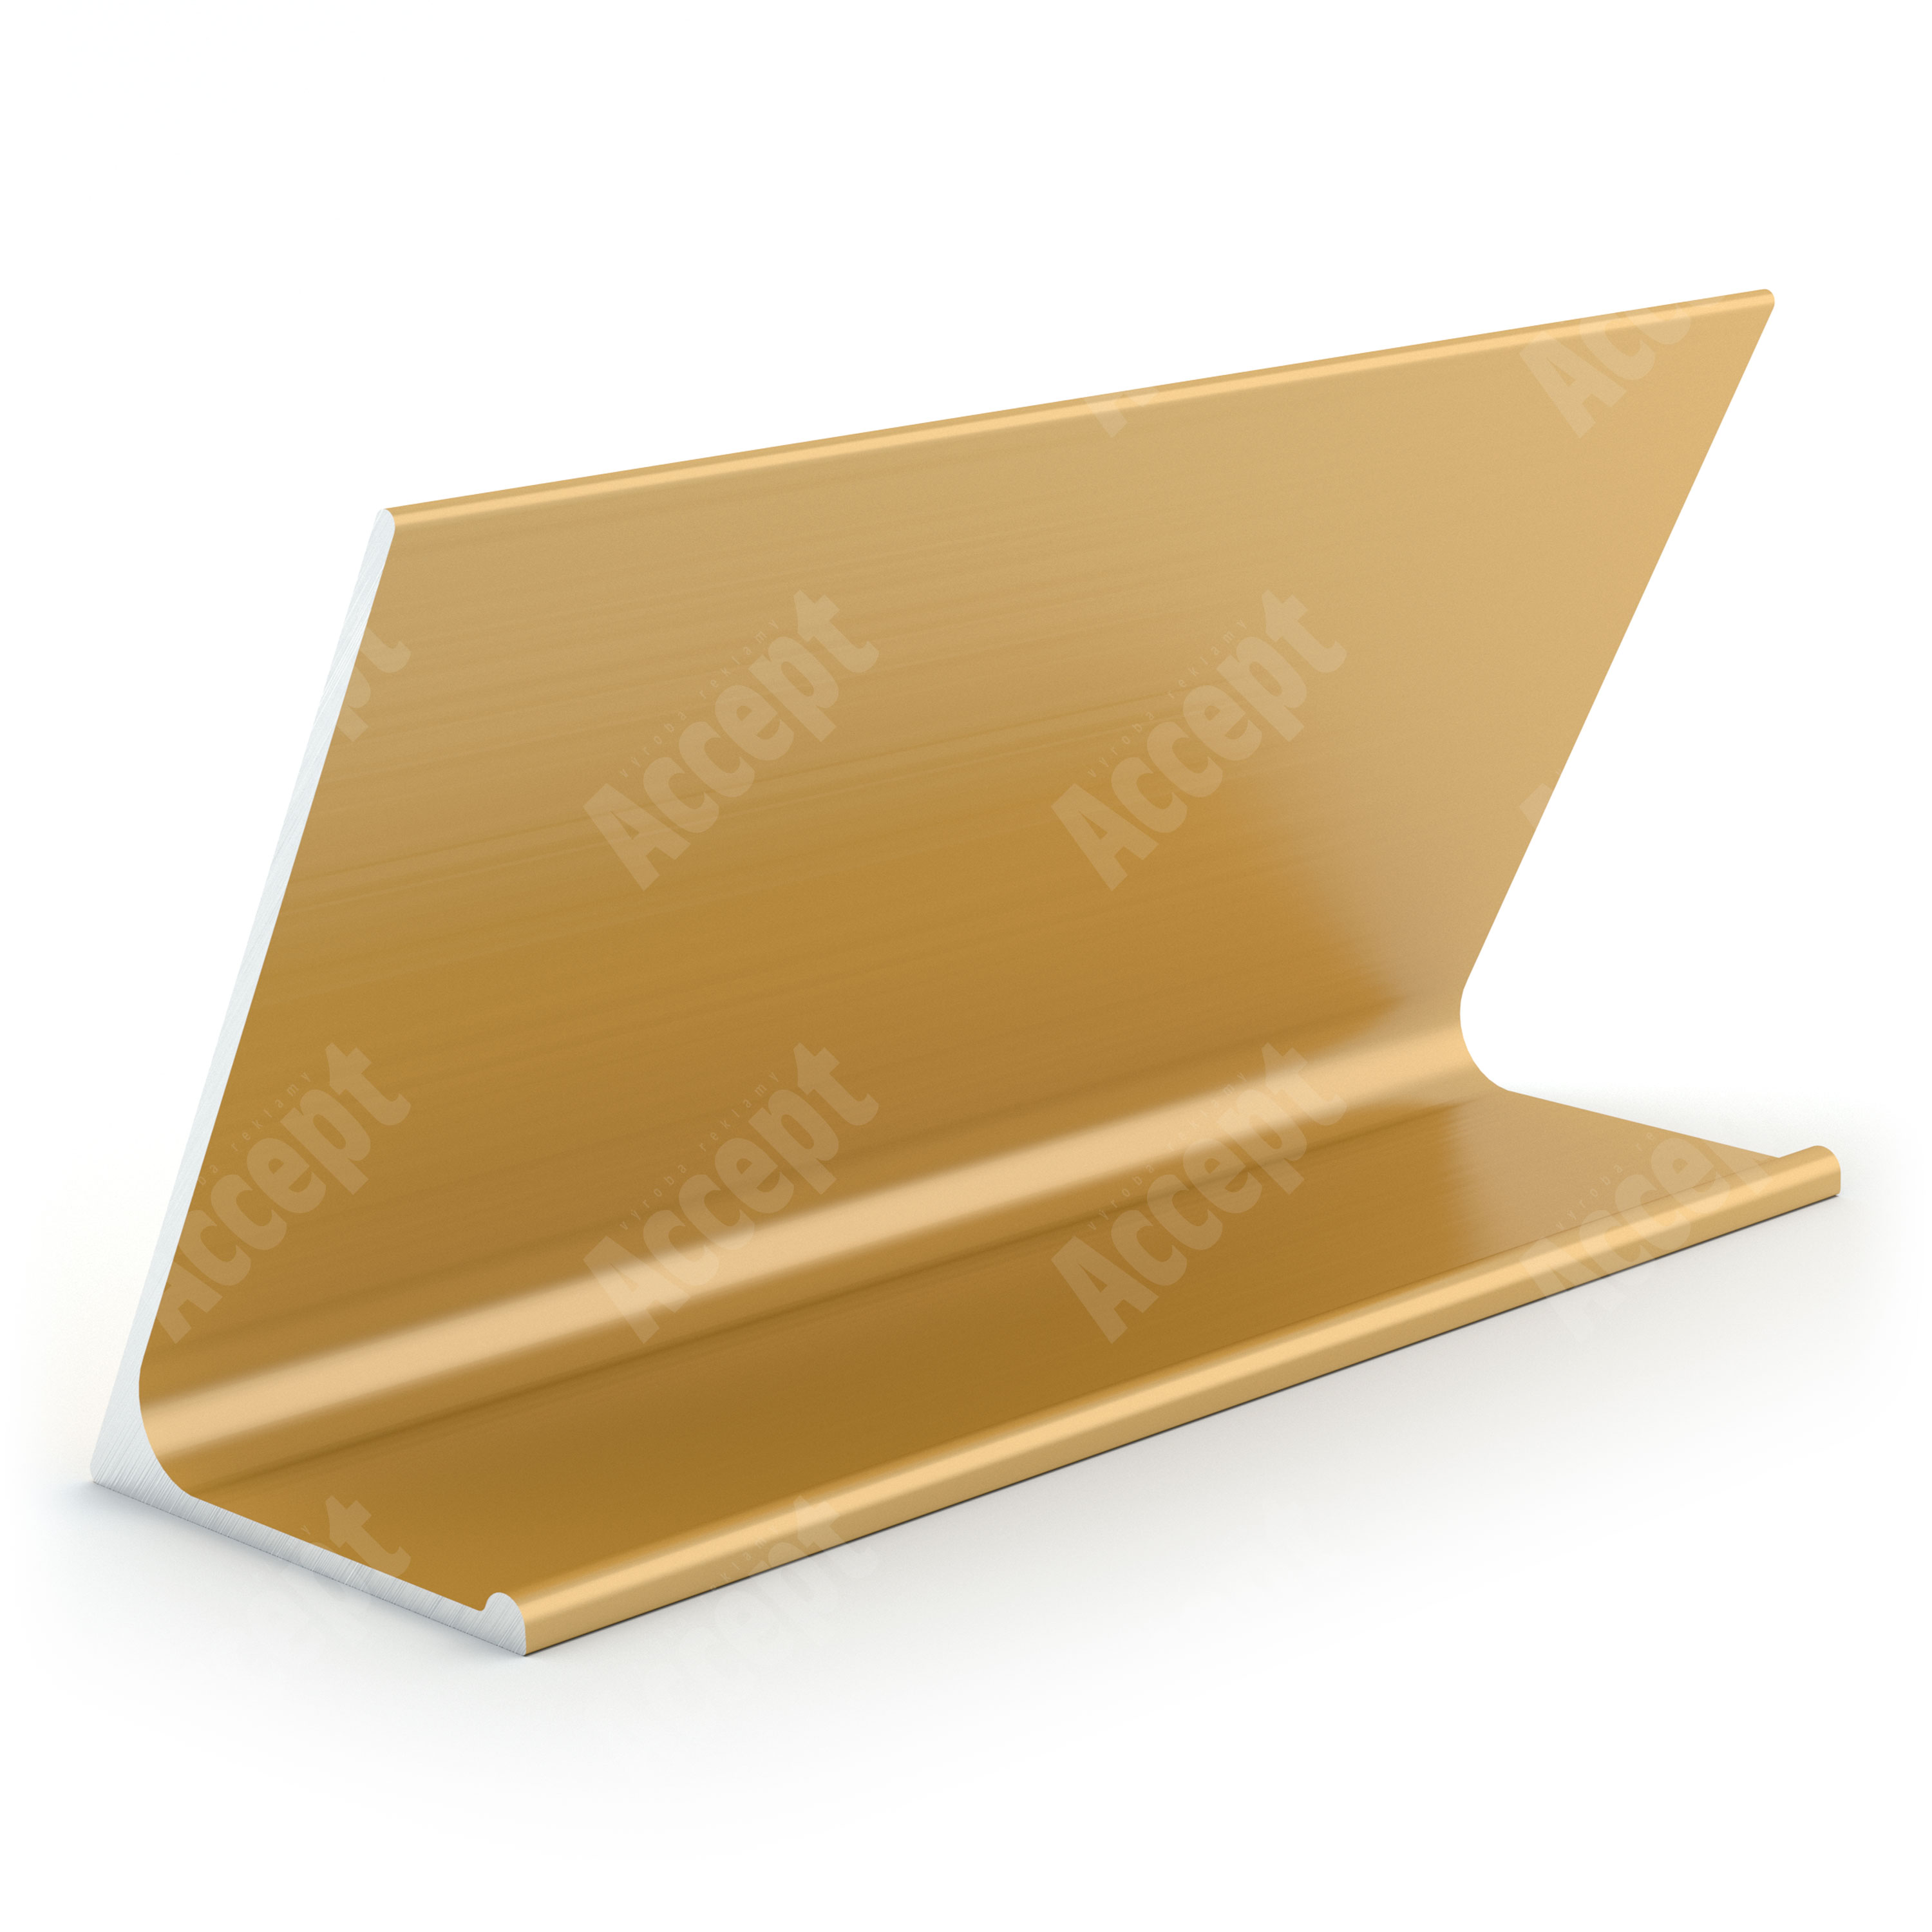 zlatý stolní informační stojánek D-62 ze zadní strany "WIFI" - D-62.ZLA.105.015